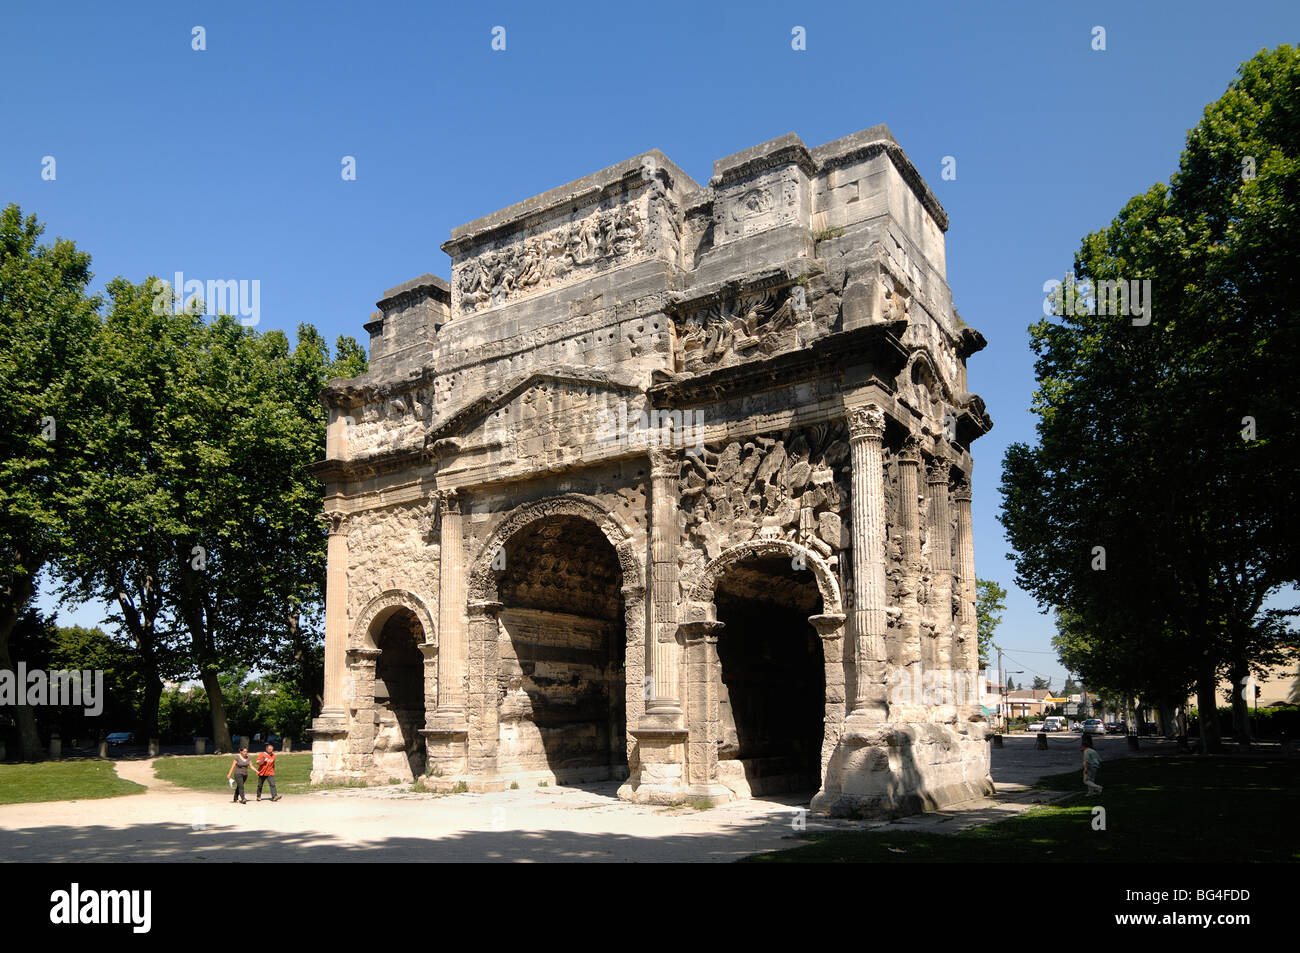 Spaziergang am Triumphbogen oder Triumphbogen von Orange (c20BC), Klassische Römische Architektur, Orange, Vaucluse, Provence, Frankreich Stockfoto